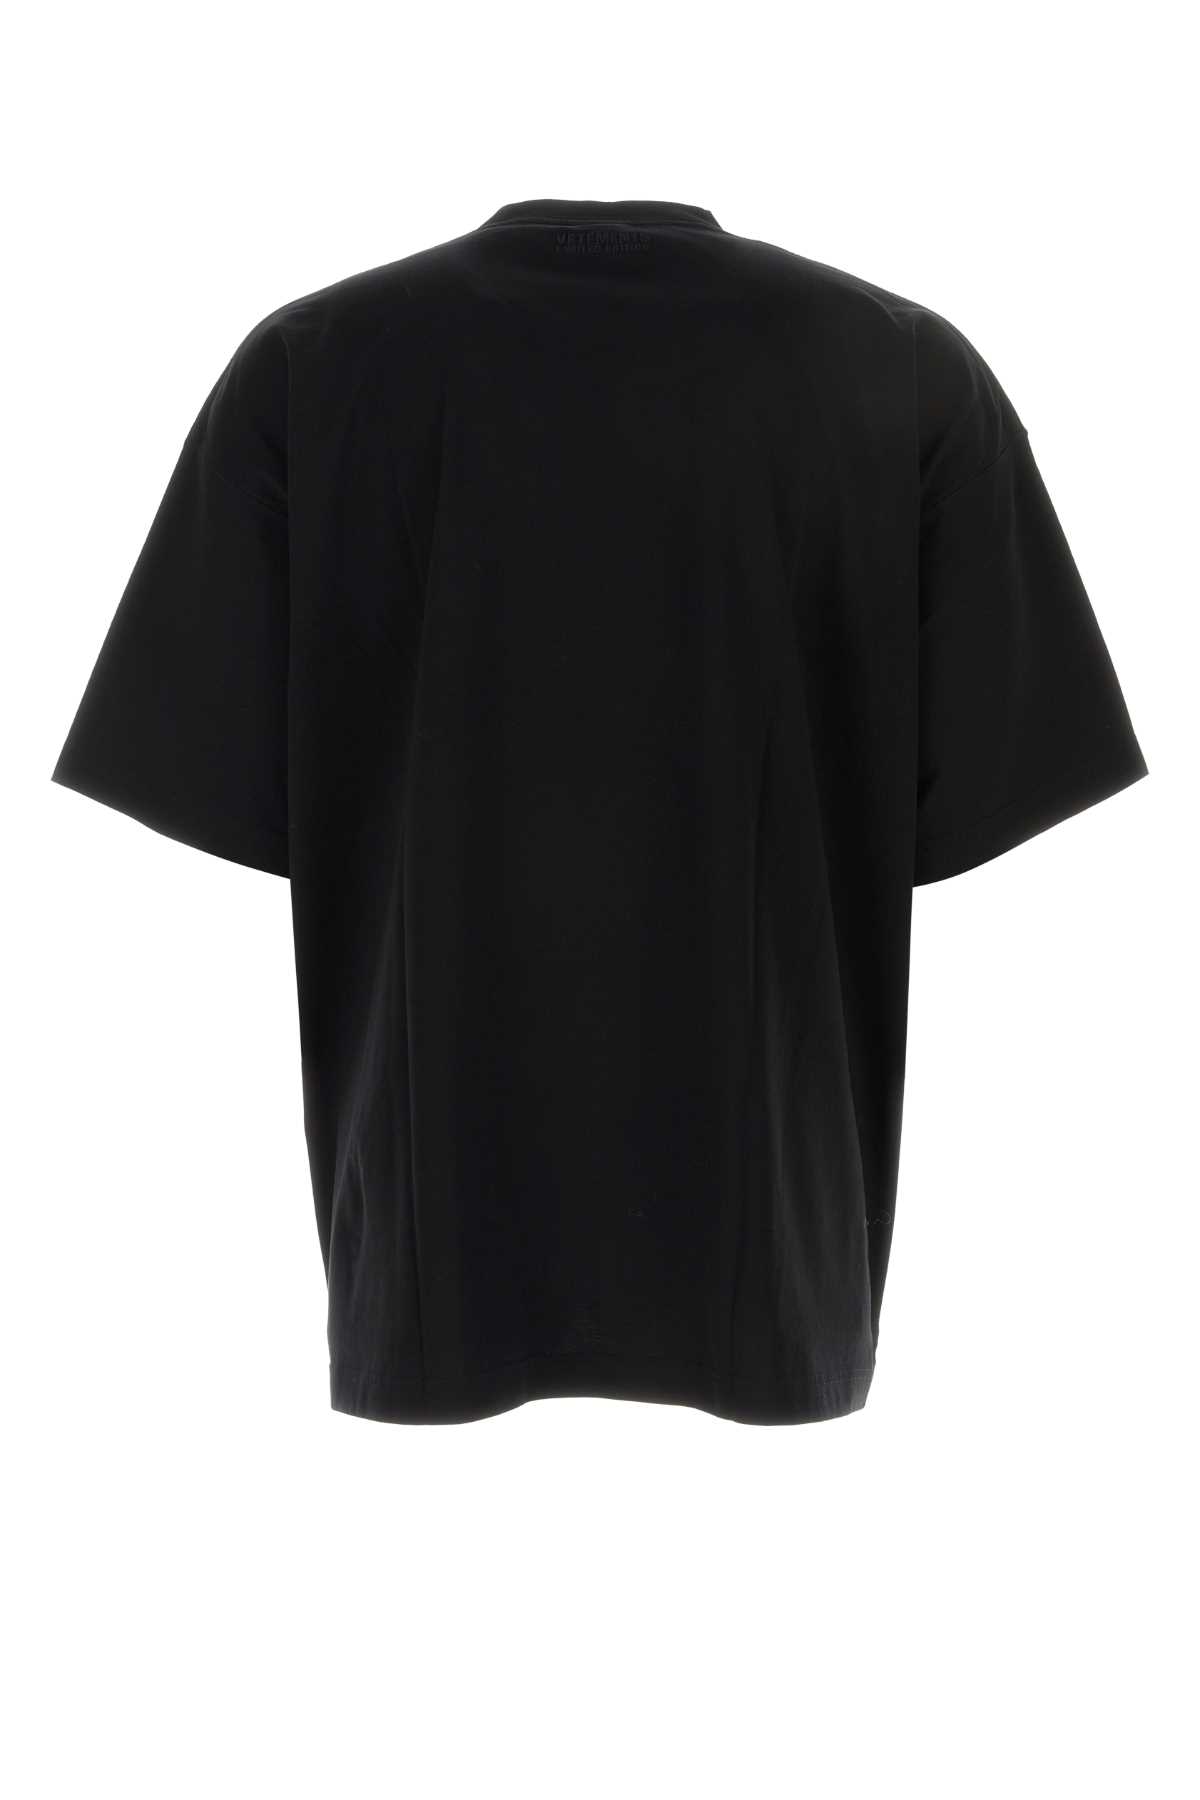 Shop Vetements Black Stretch Cotton Oversize T-shirt